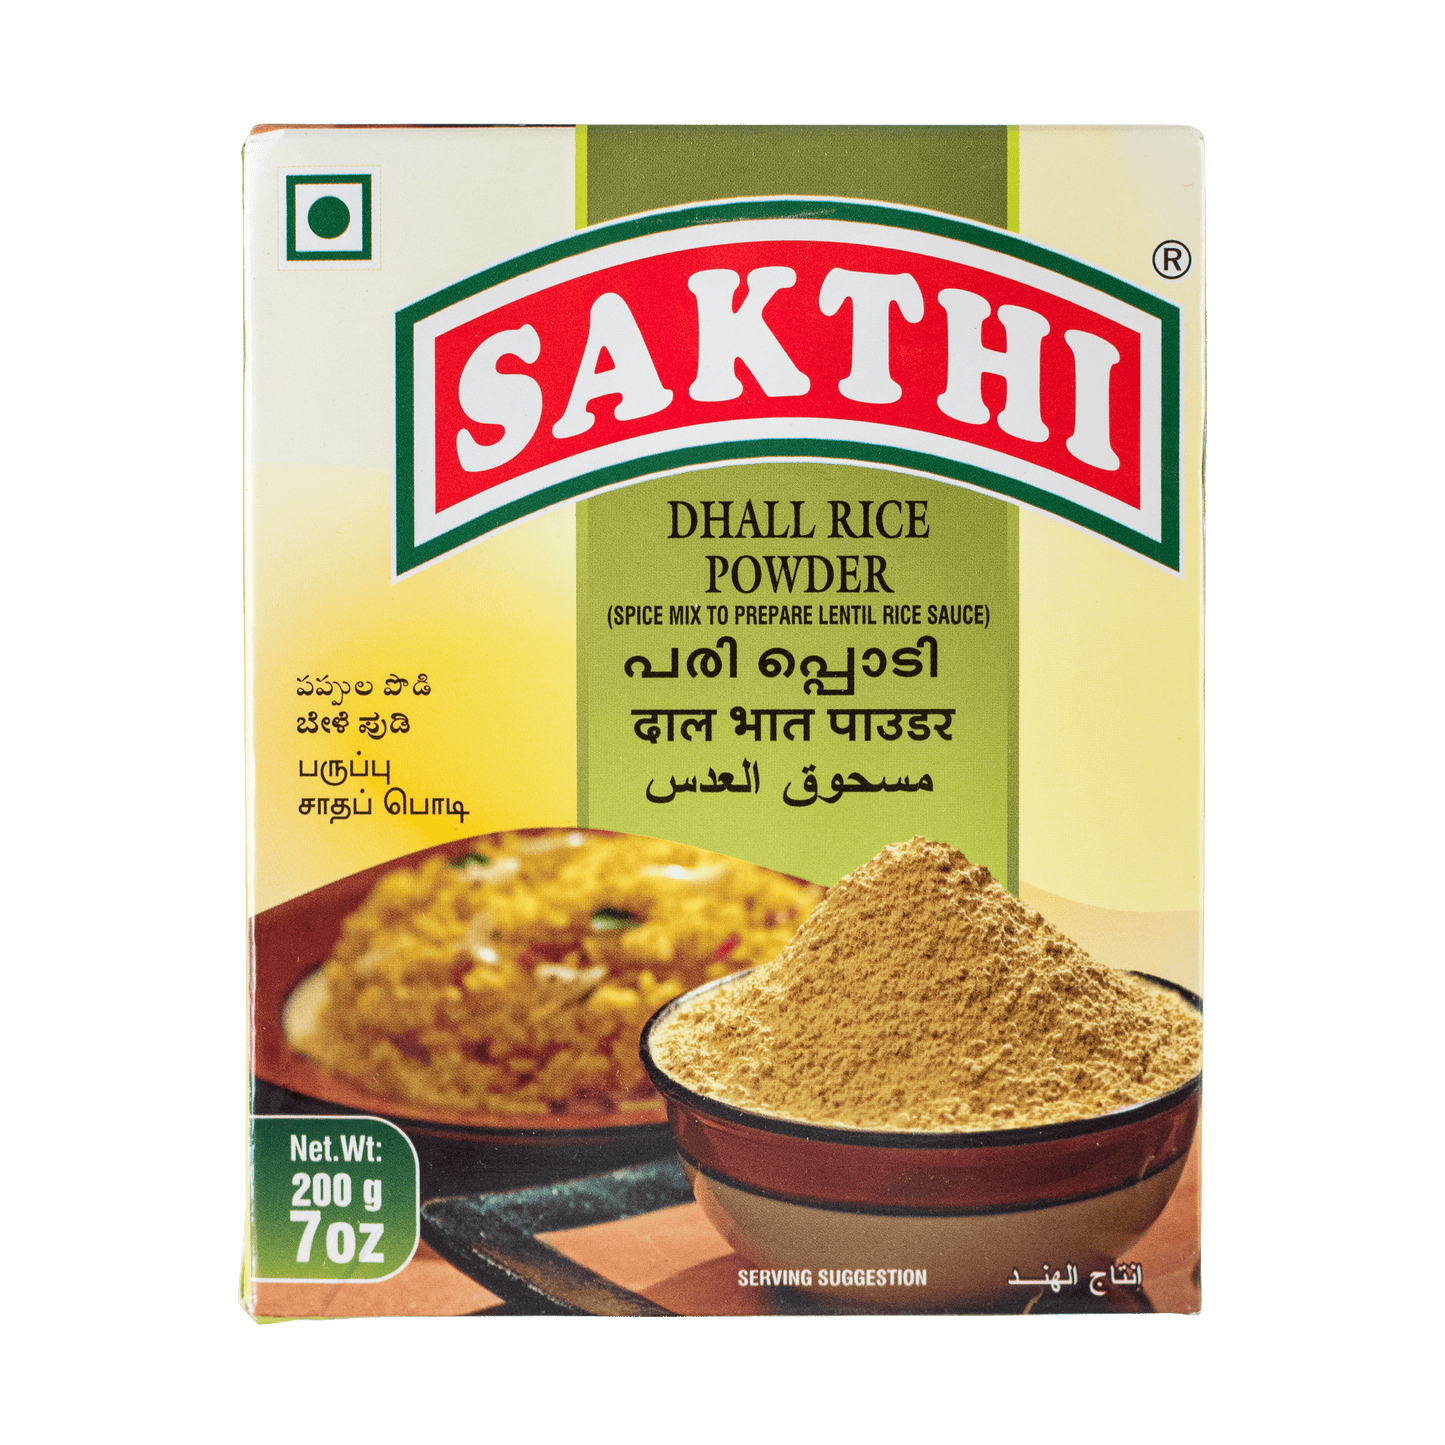 Sakthi Dhall (daal) Rice Powder 200g